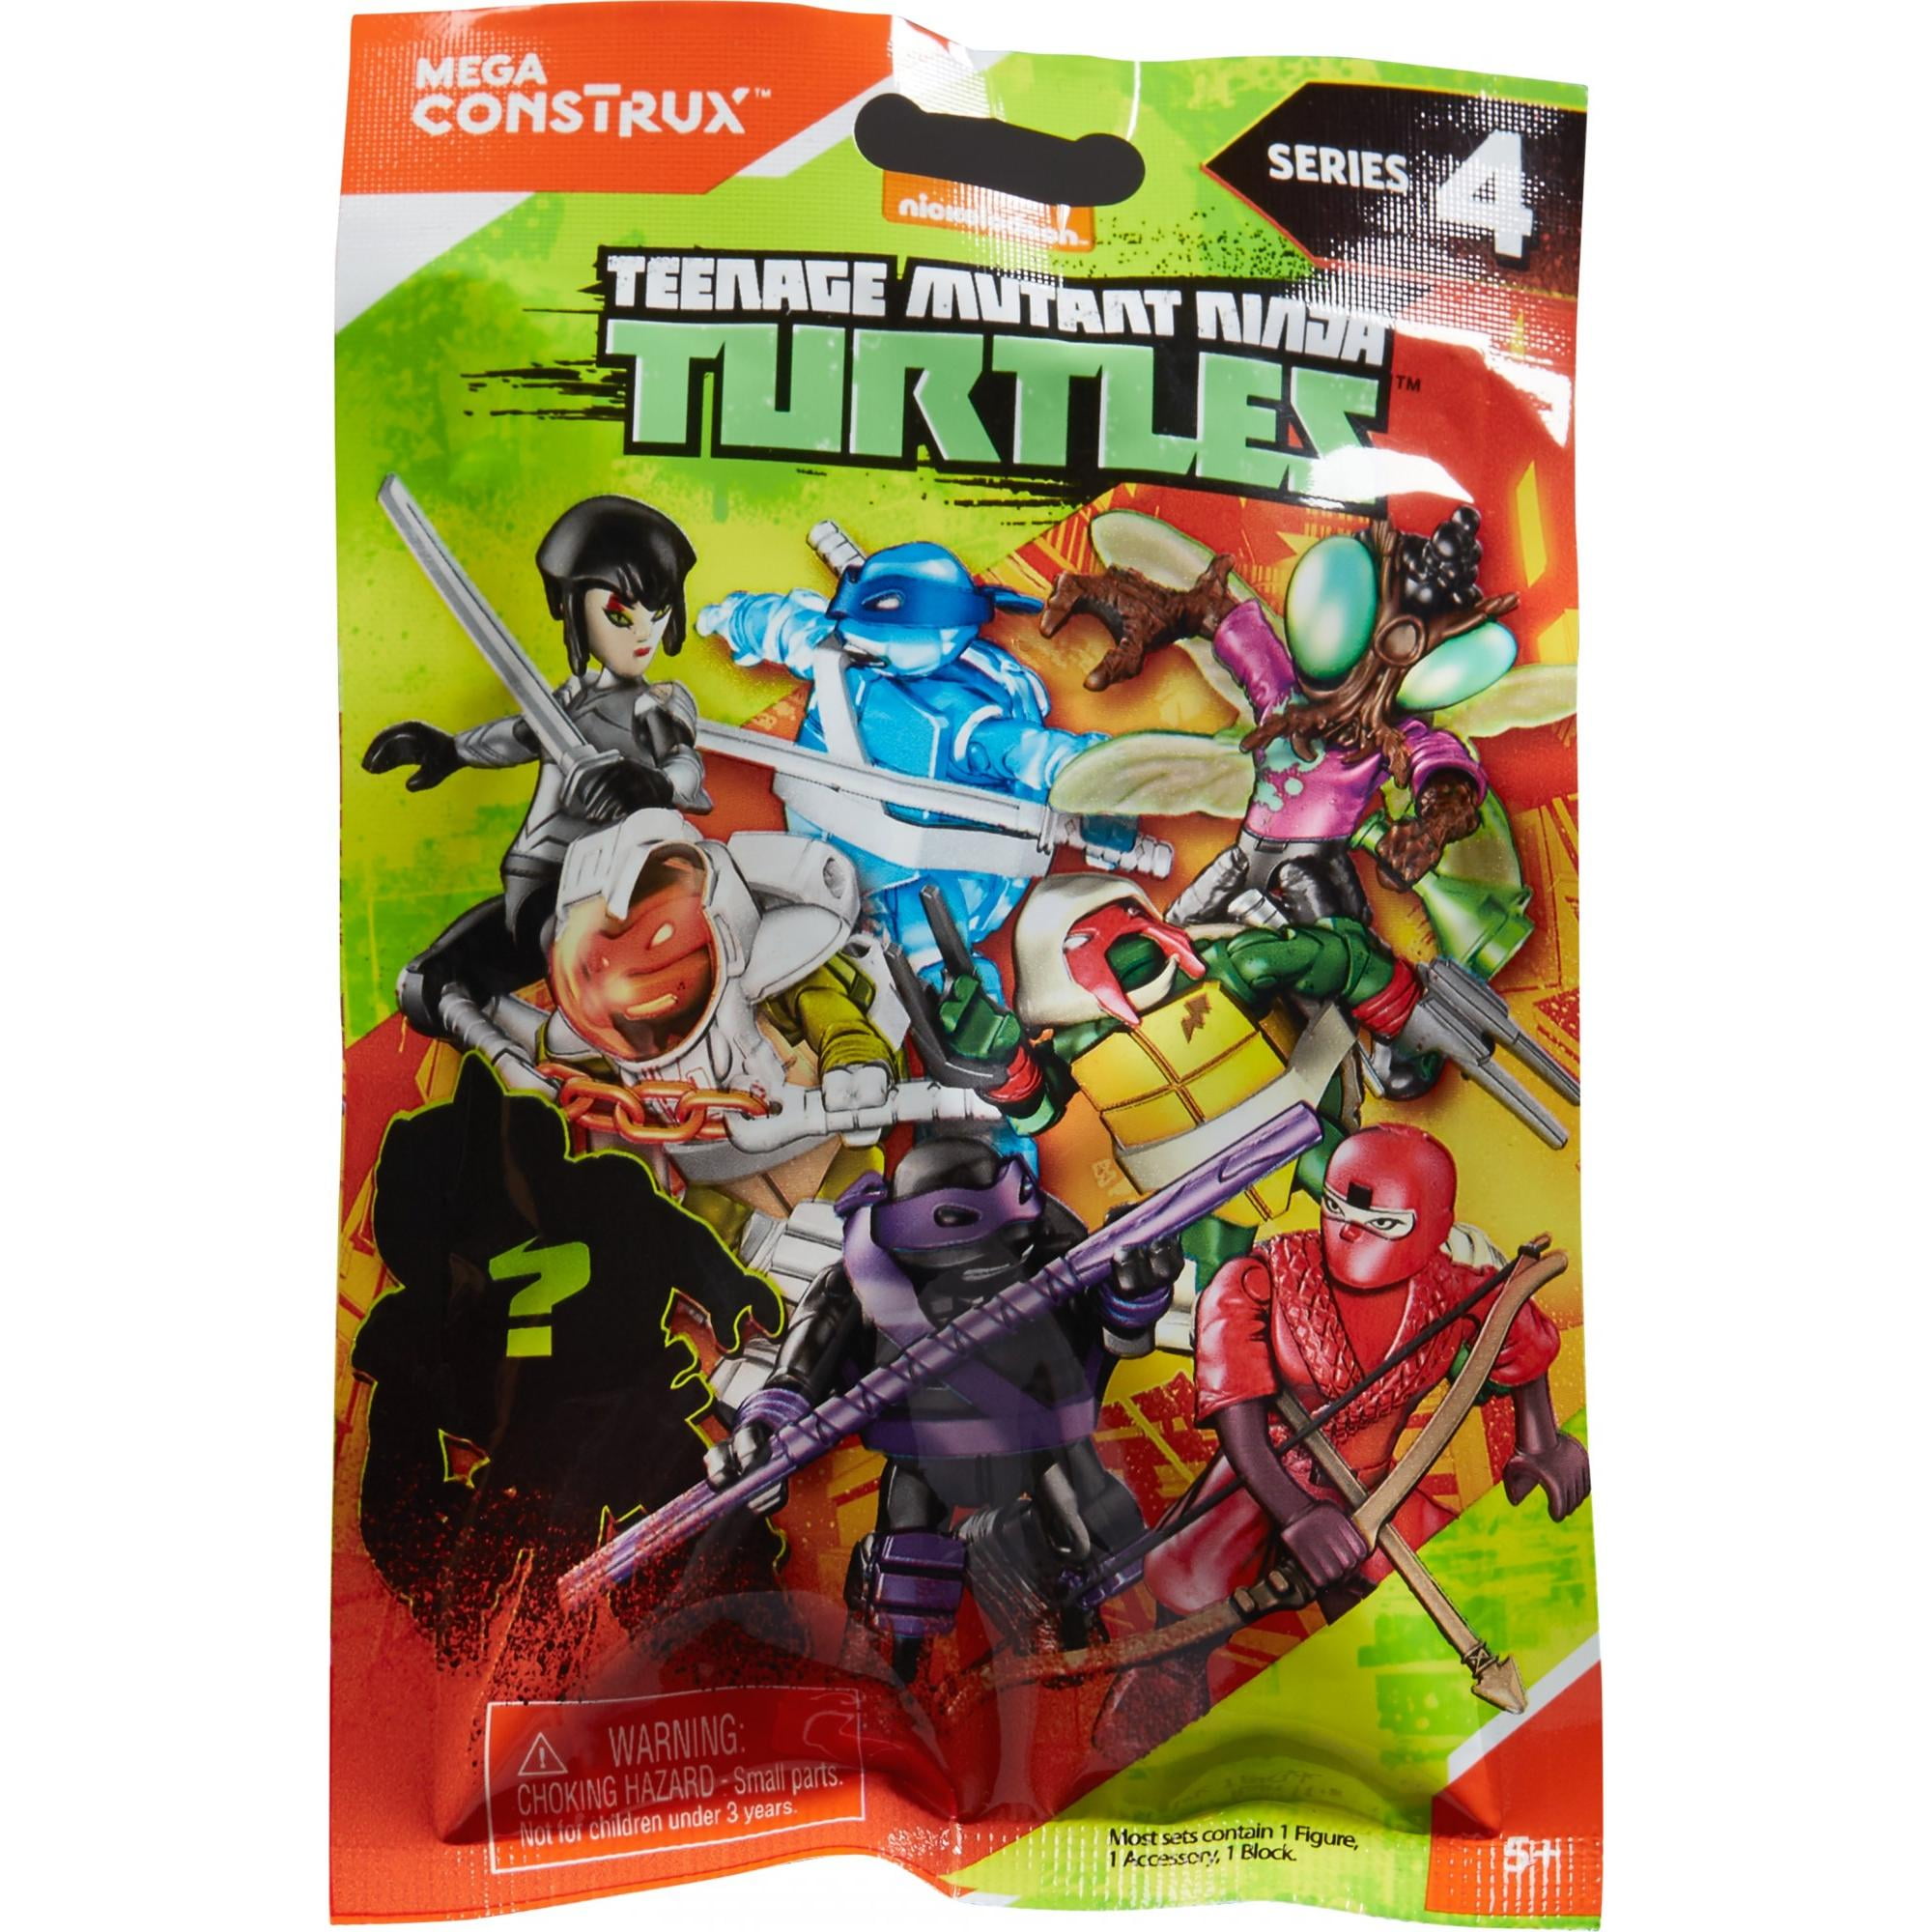 Teenage Mutant Ninja Turtles   Cups Set of 4 Packs 